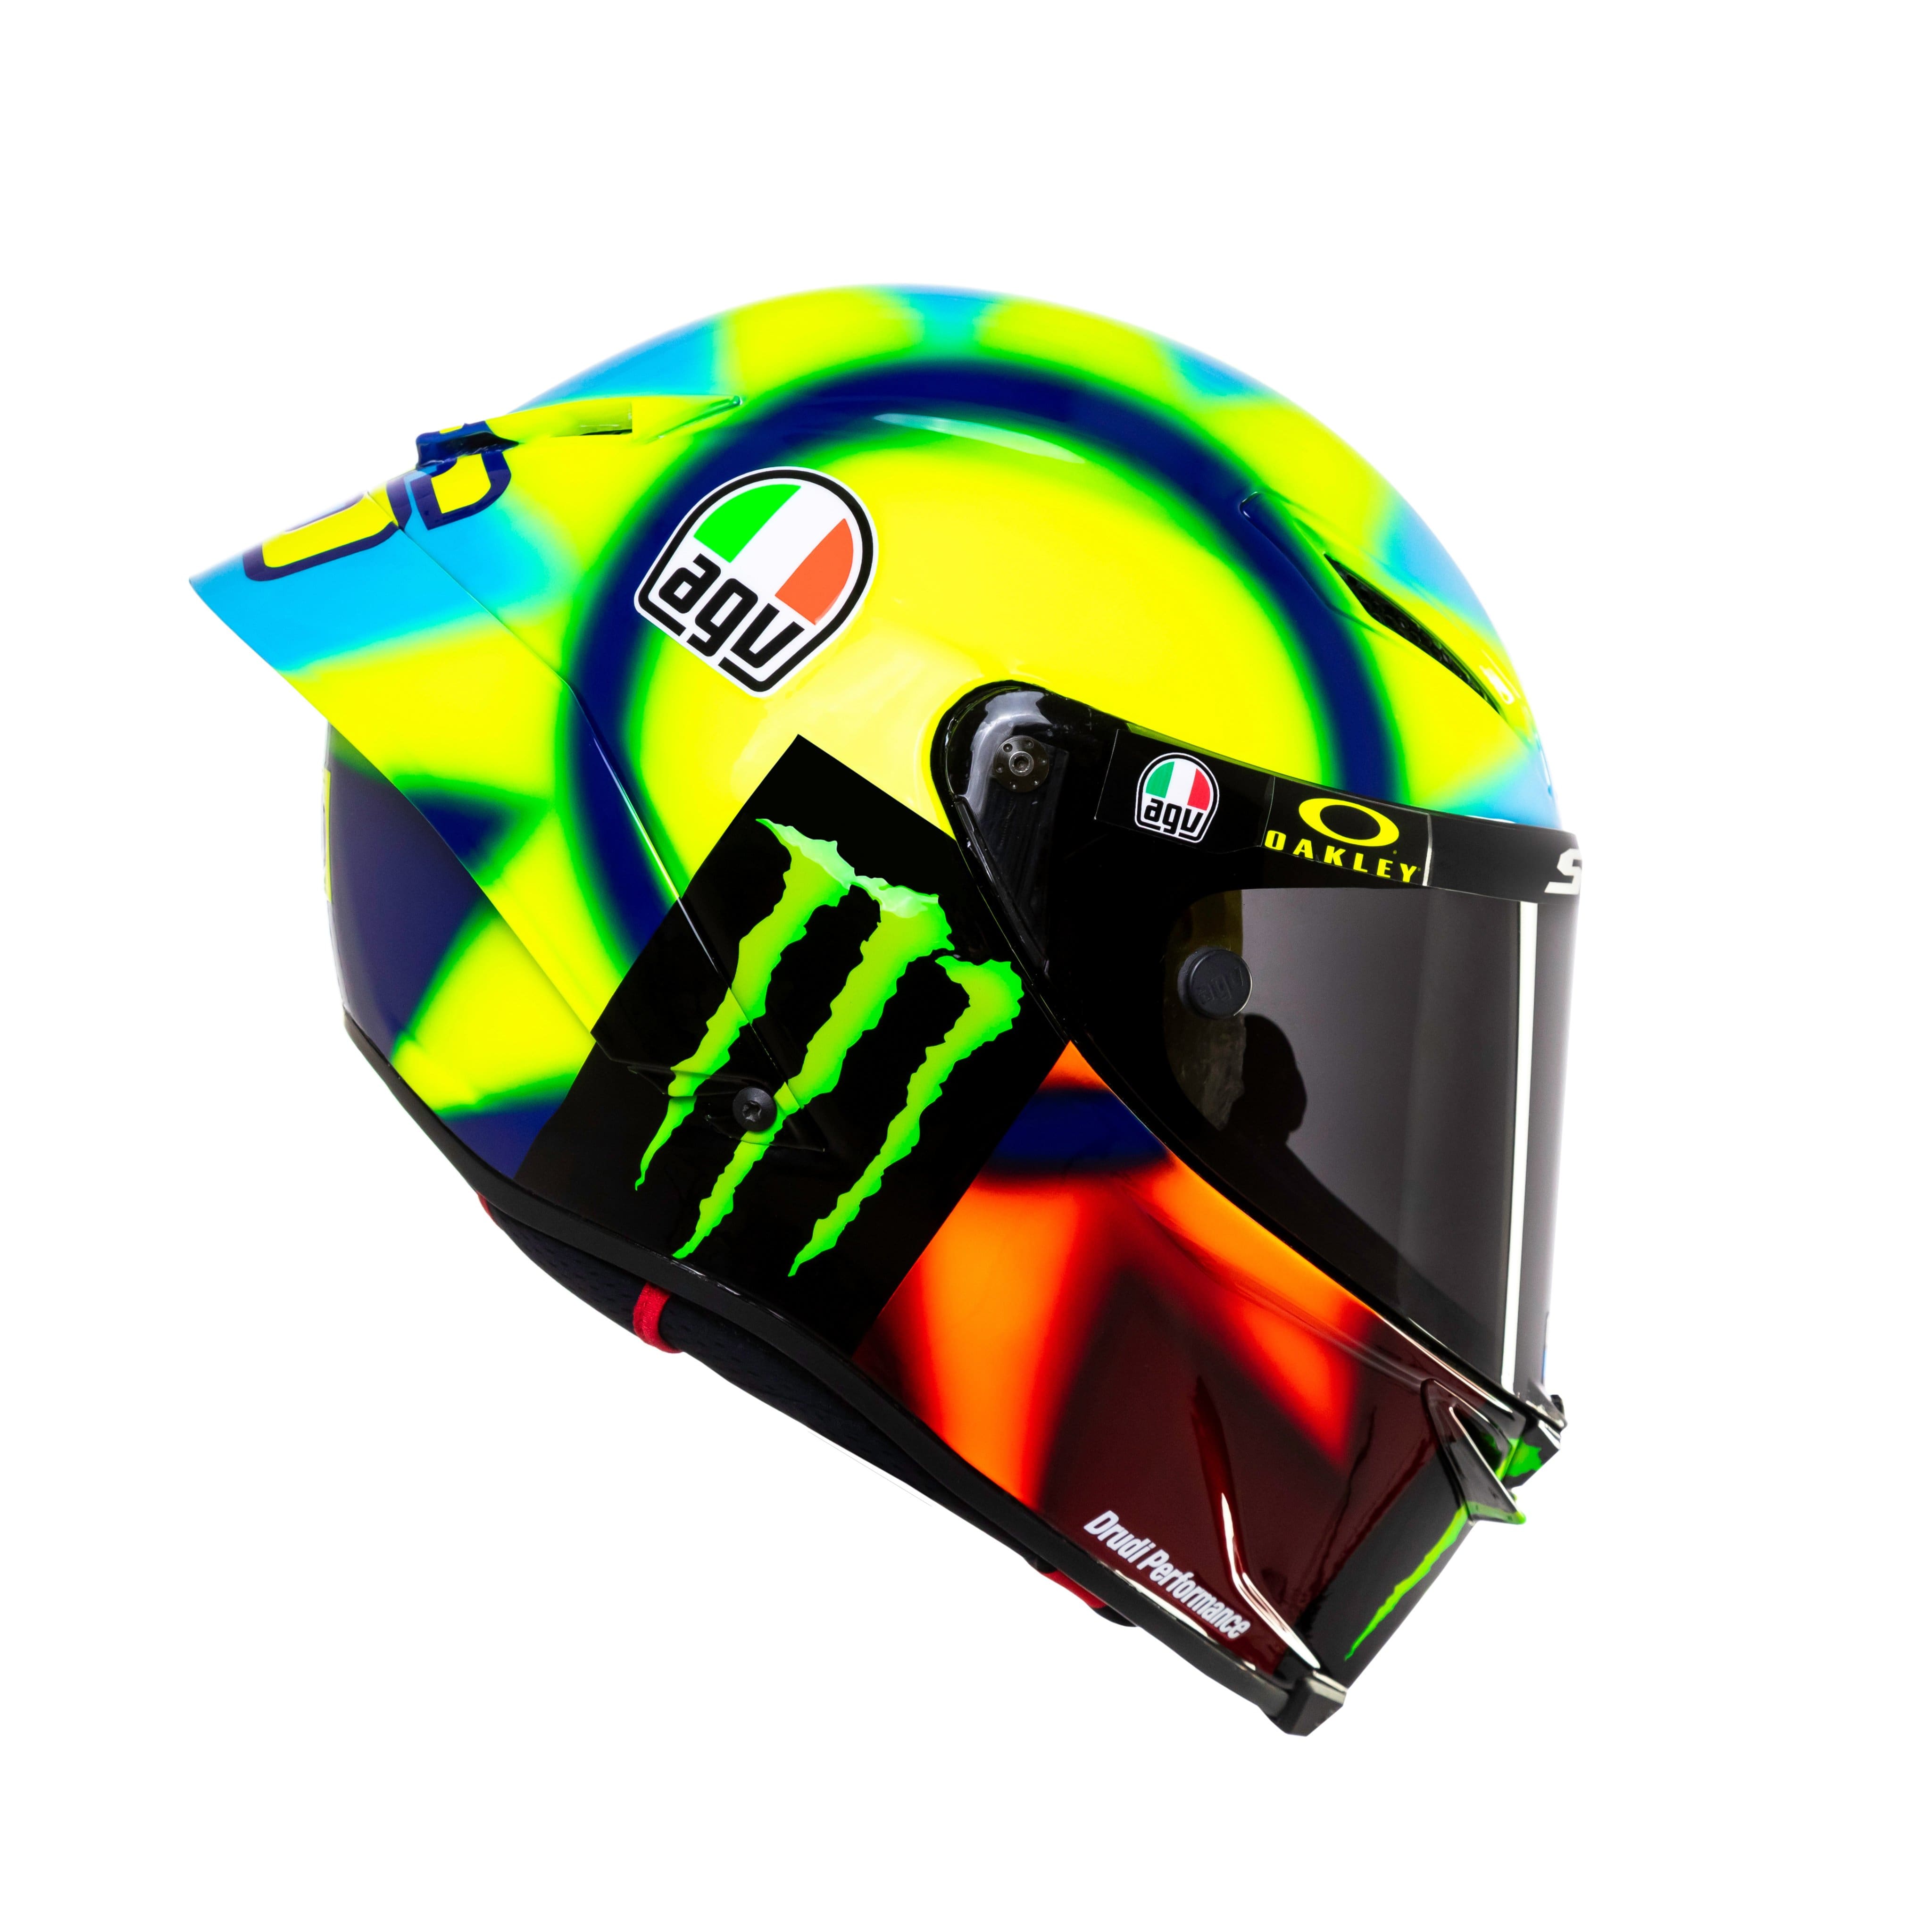 Rossi casco 2021